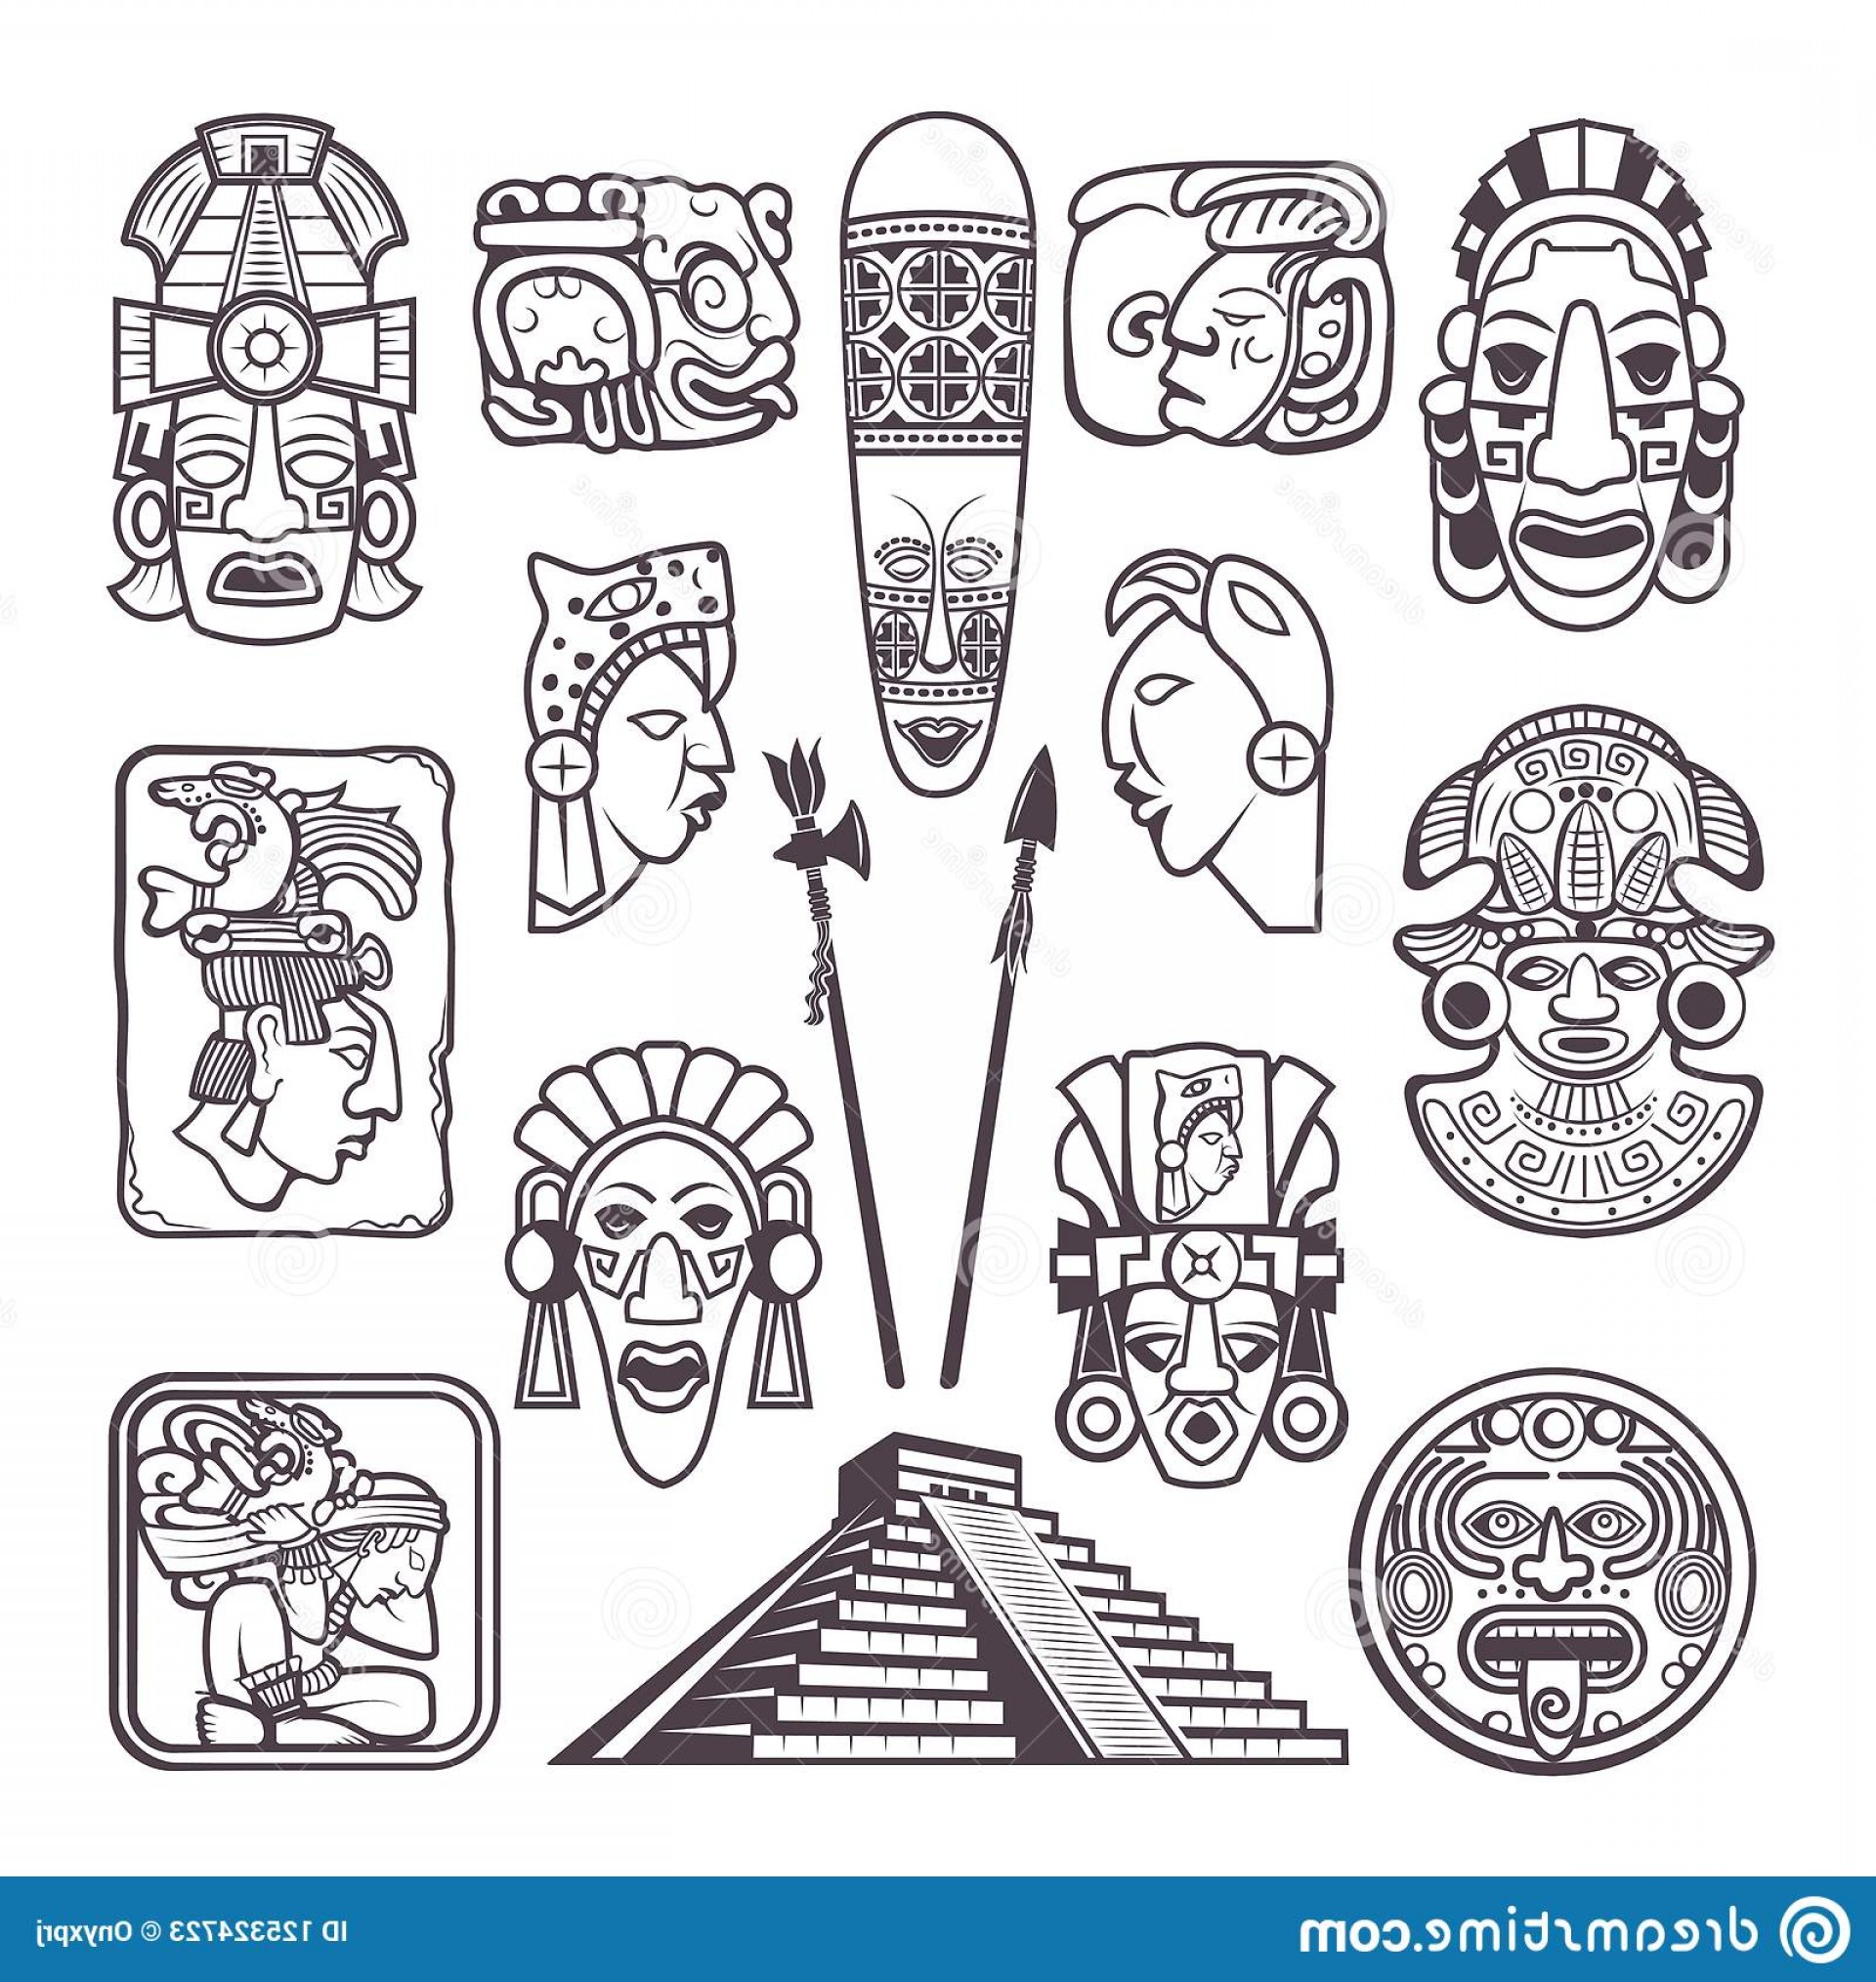 Mayan Symbols Vector at Vectorified.com | Collection of Mayan Symbols ...